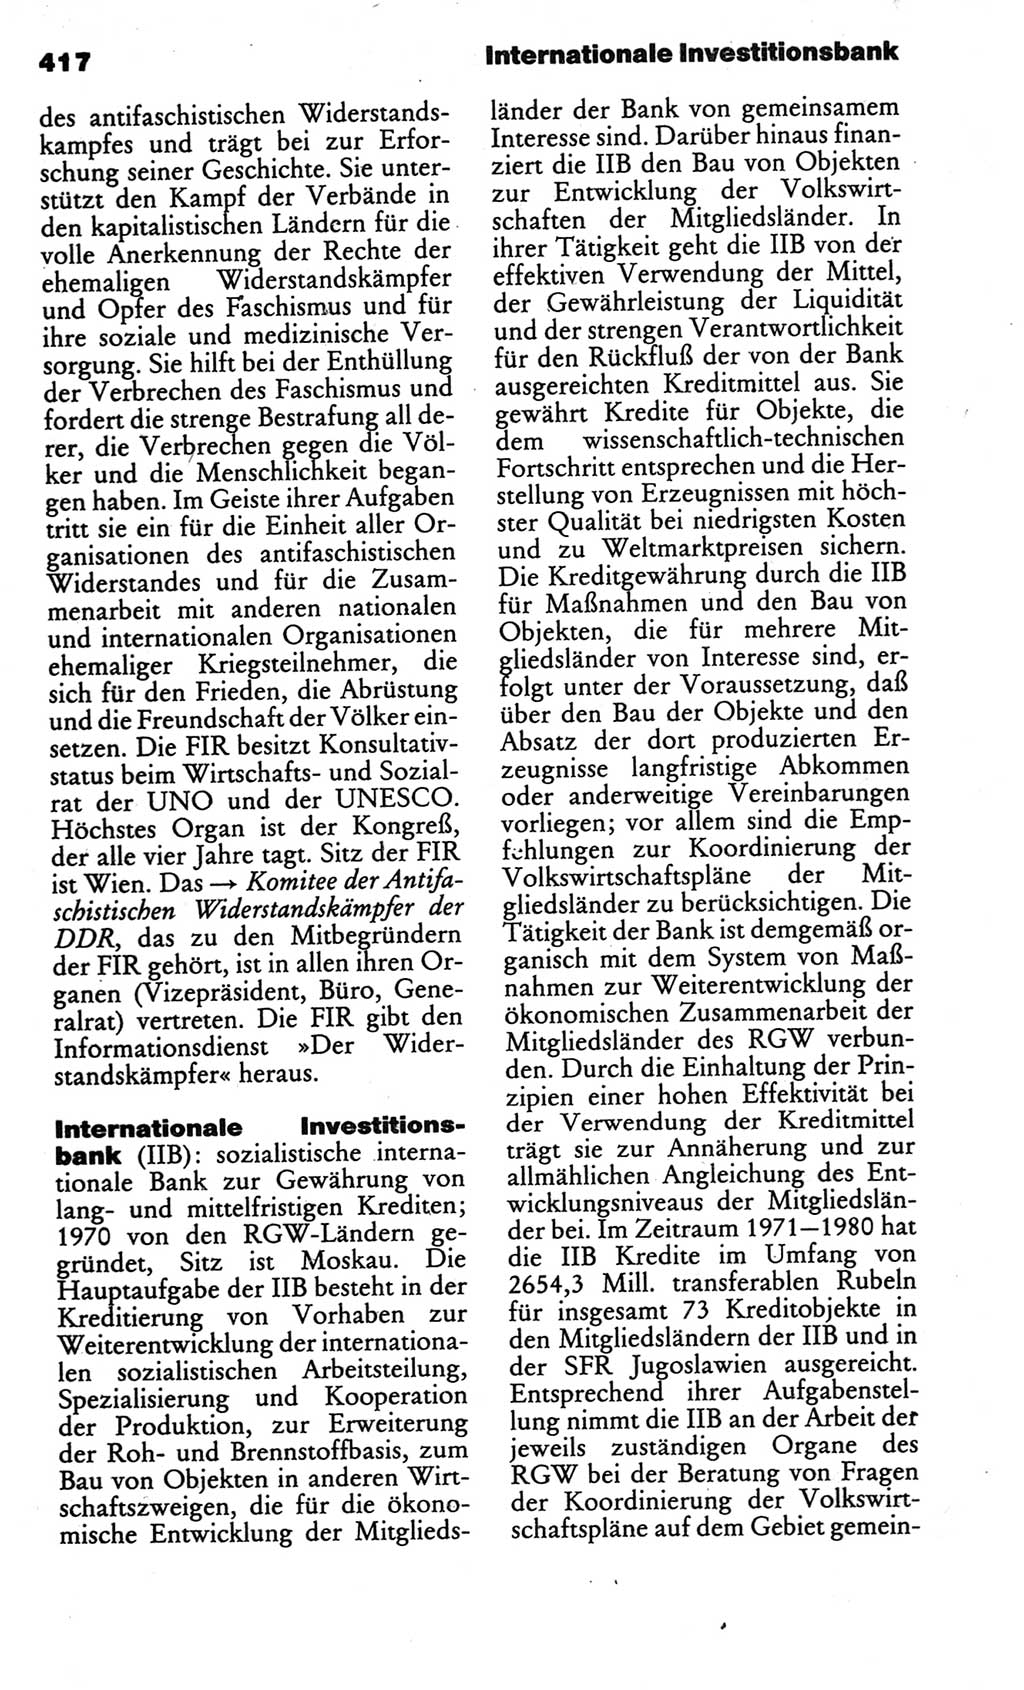 Kleines politisches Wörterbuch [Deutsche Demokratische Republik (DDR)] 1986, Seite 417 (Kl. pol. Wb. DDR 1986, S. 417)